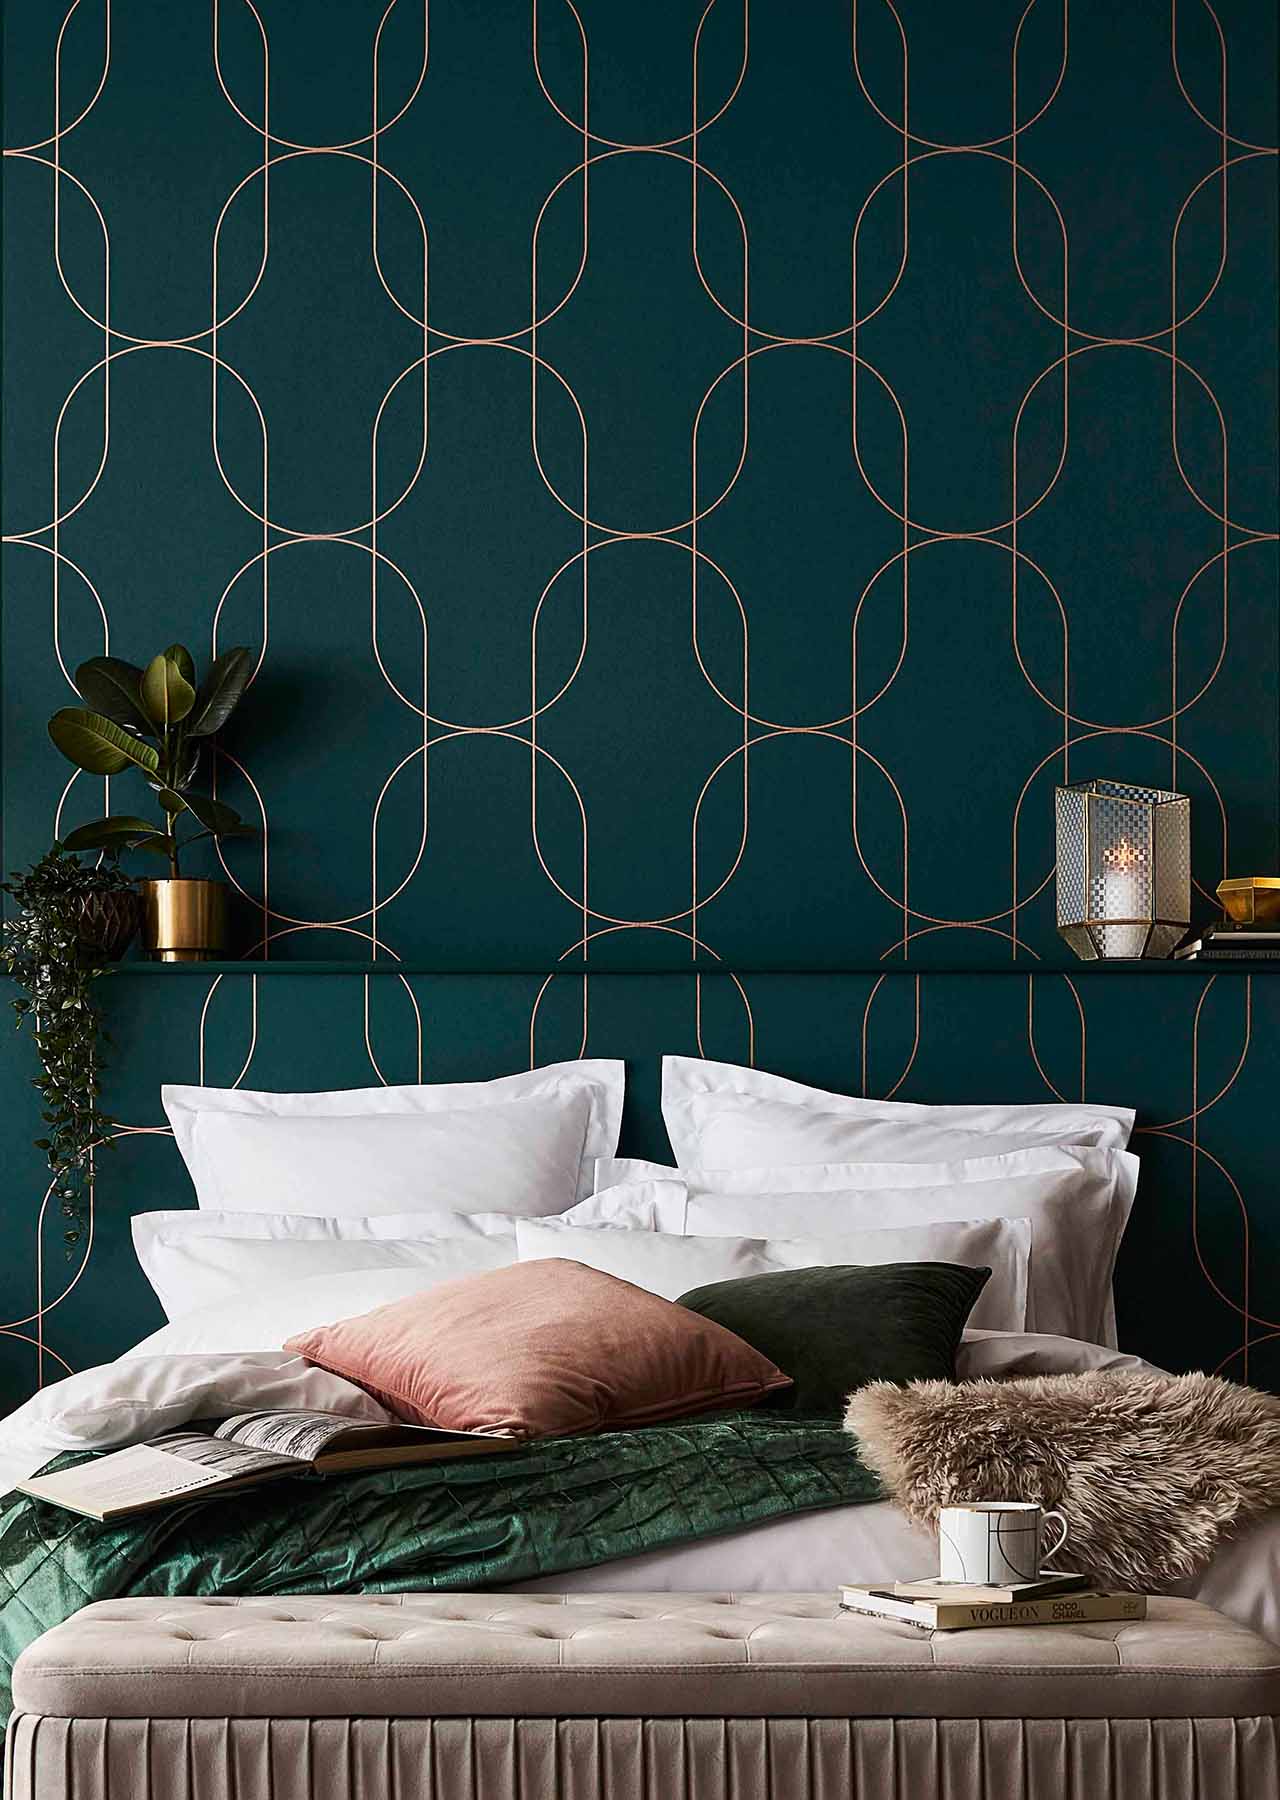 Modern Wallpaper Designs [From 5 Top Designers] | Wallsauce UK